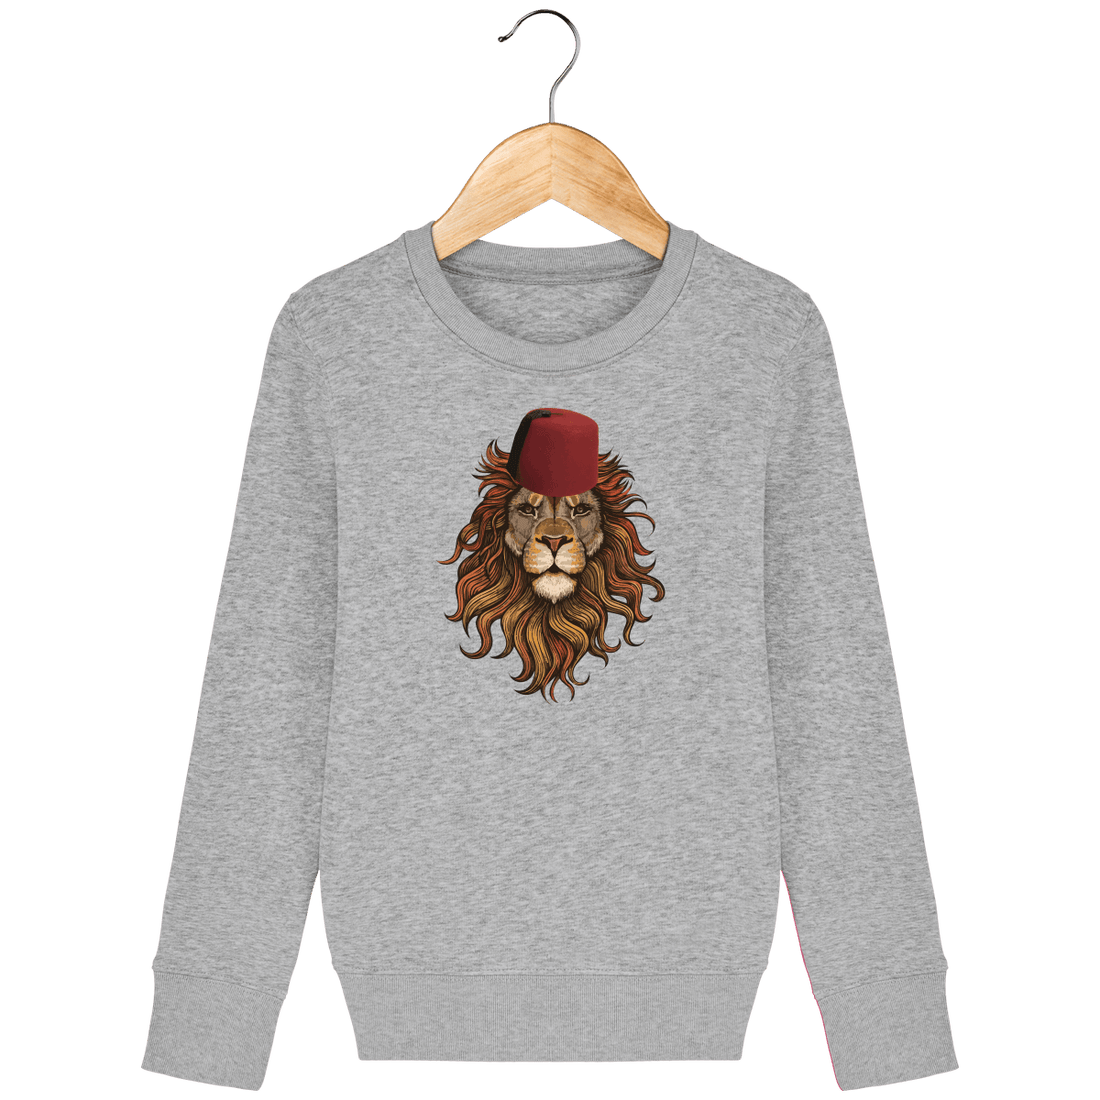 Enfant & Bébé>Sweatshirts - Sweat Enfant Lion De L'Atlas Maroc